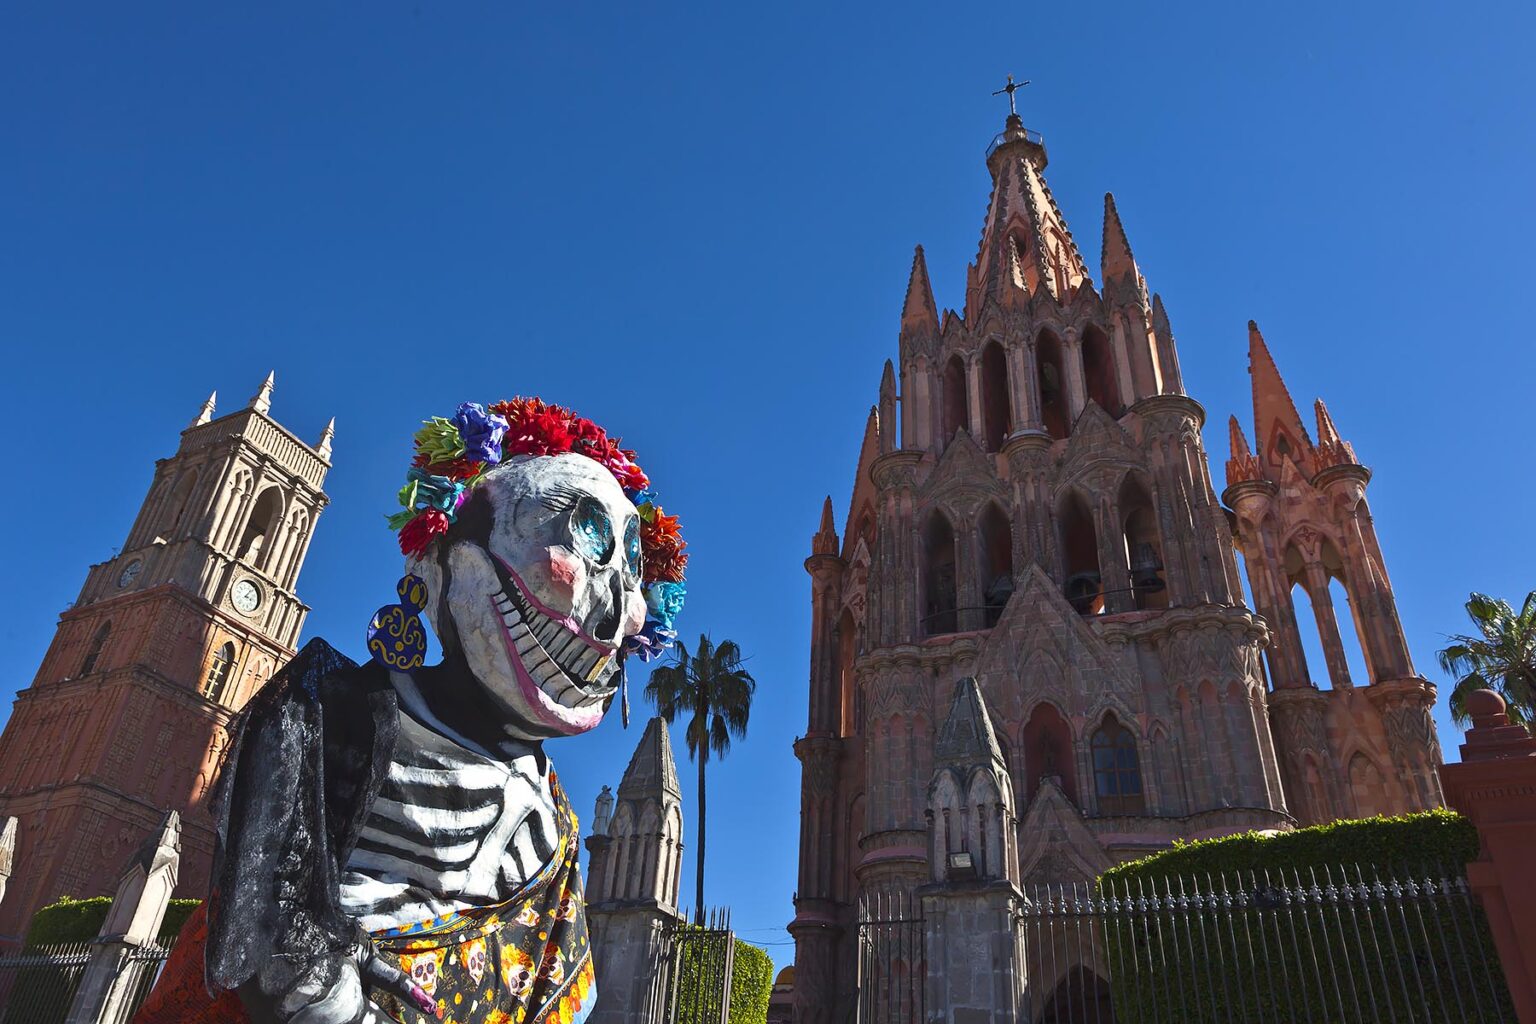 A paper mache giant LA CALAVERA CATRINA or Elegant Skull, the icon of the DAY OF THE DEAD - SAN MIGUEL DE ALLENDE, MEXICO